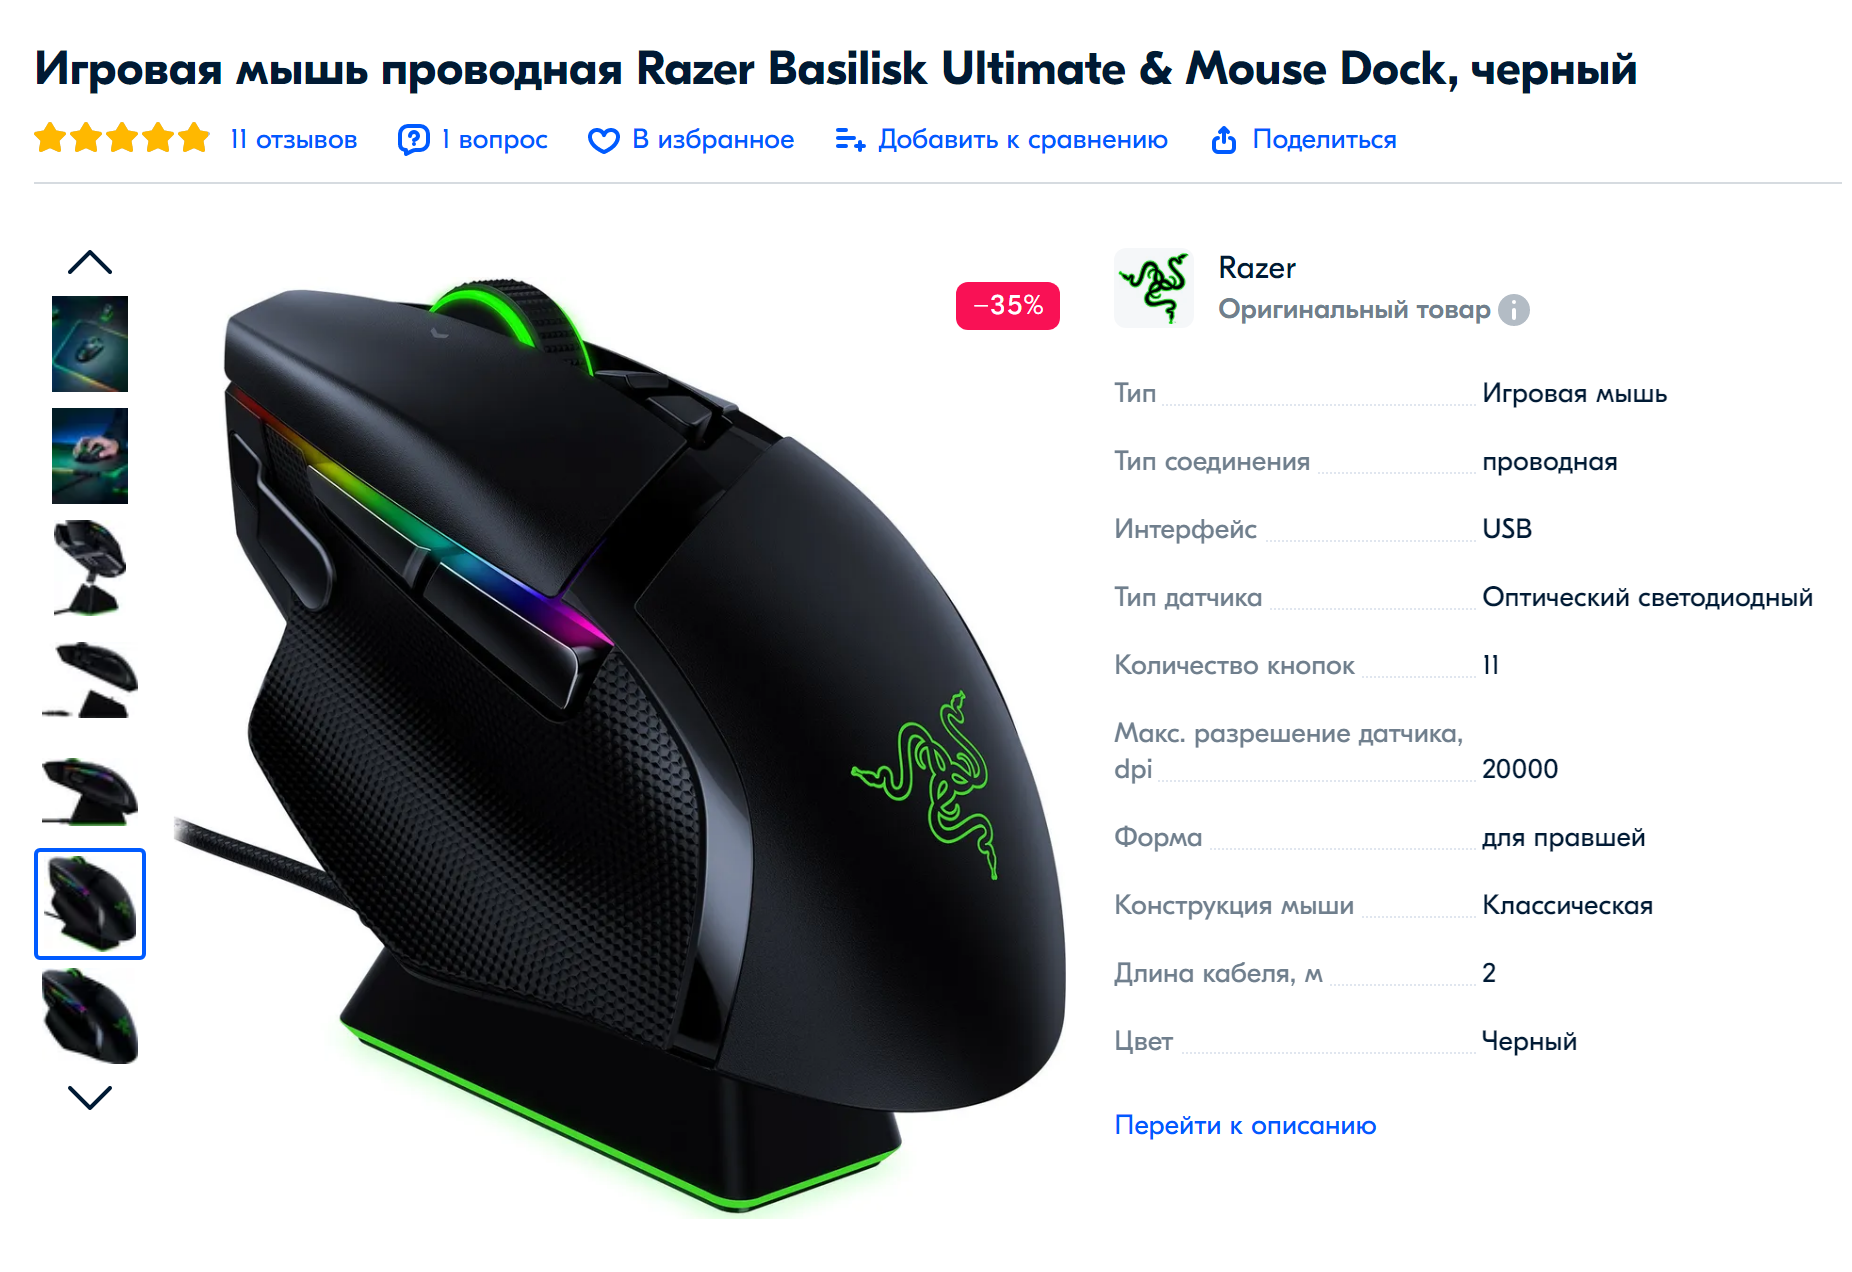 Мышь, которую планирую подарить С. Источник: ozon.ru